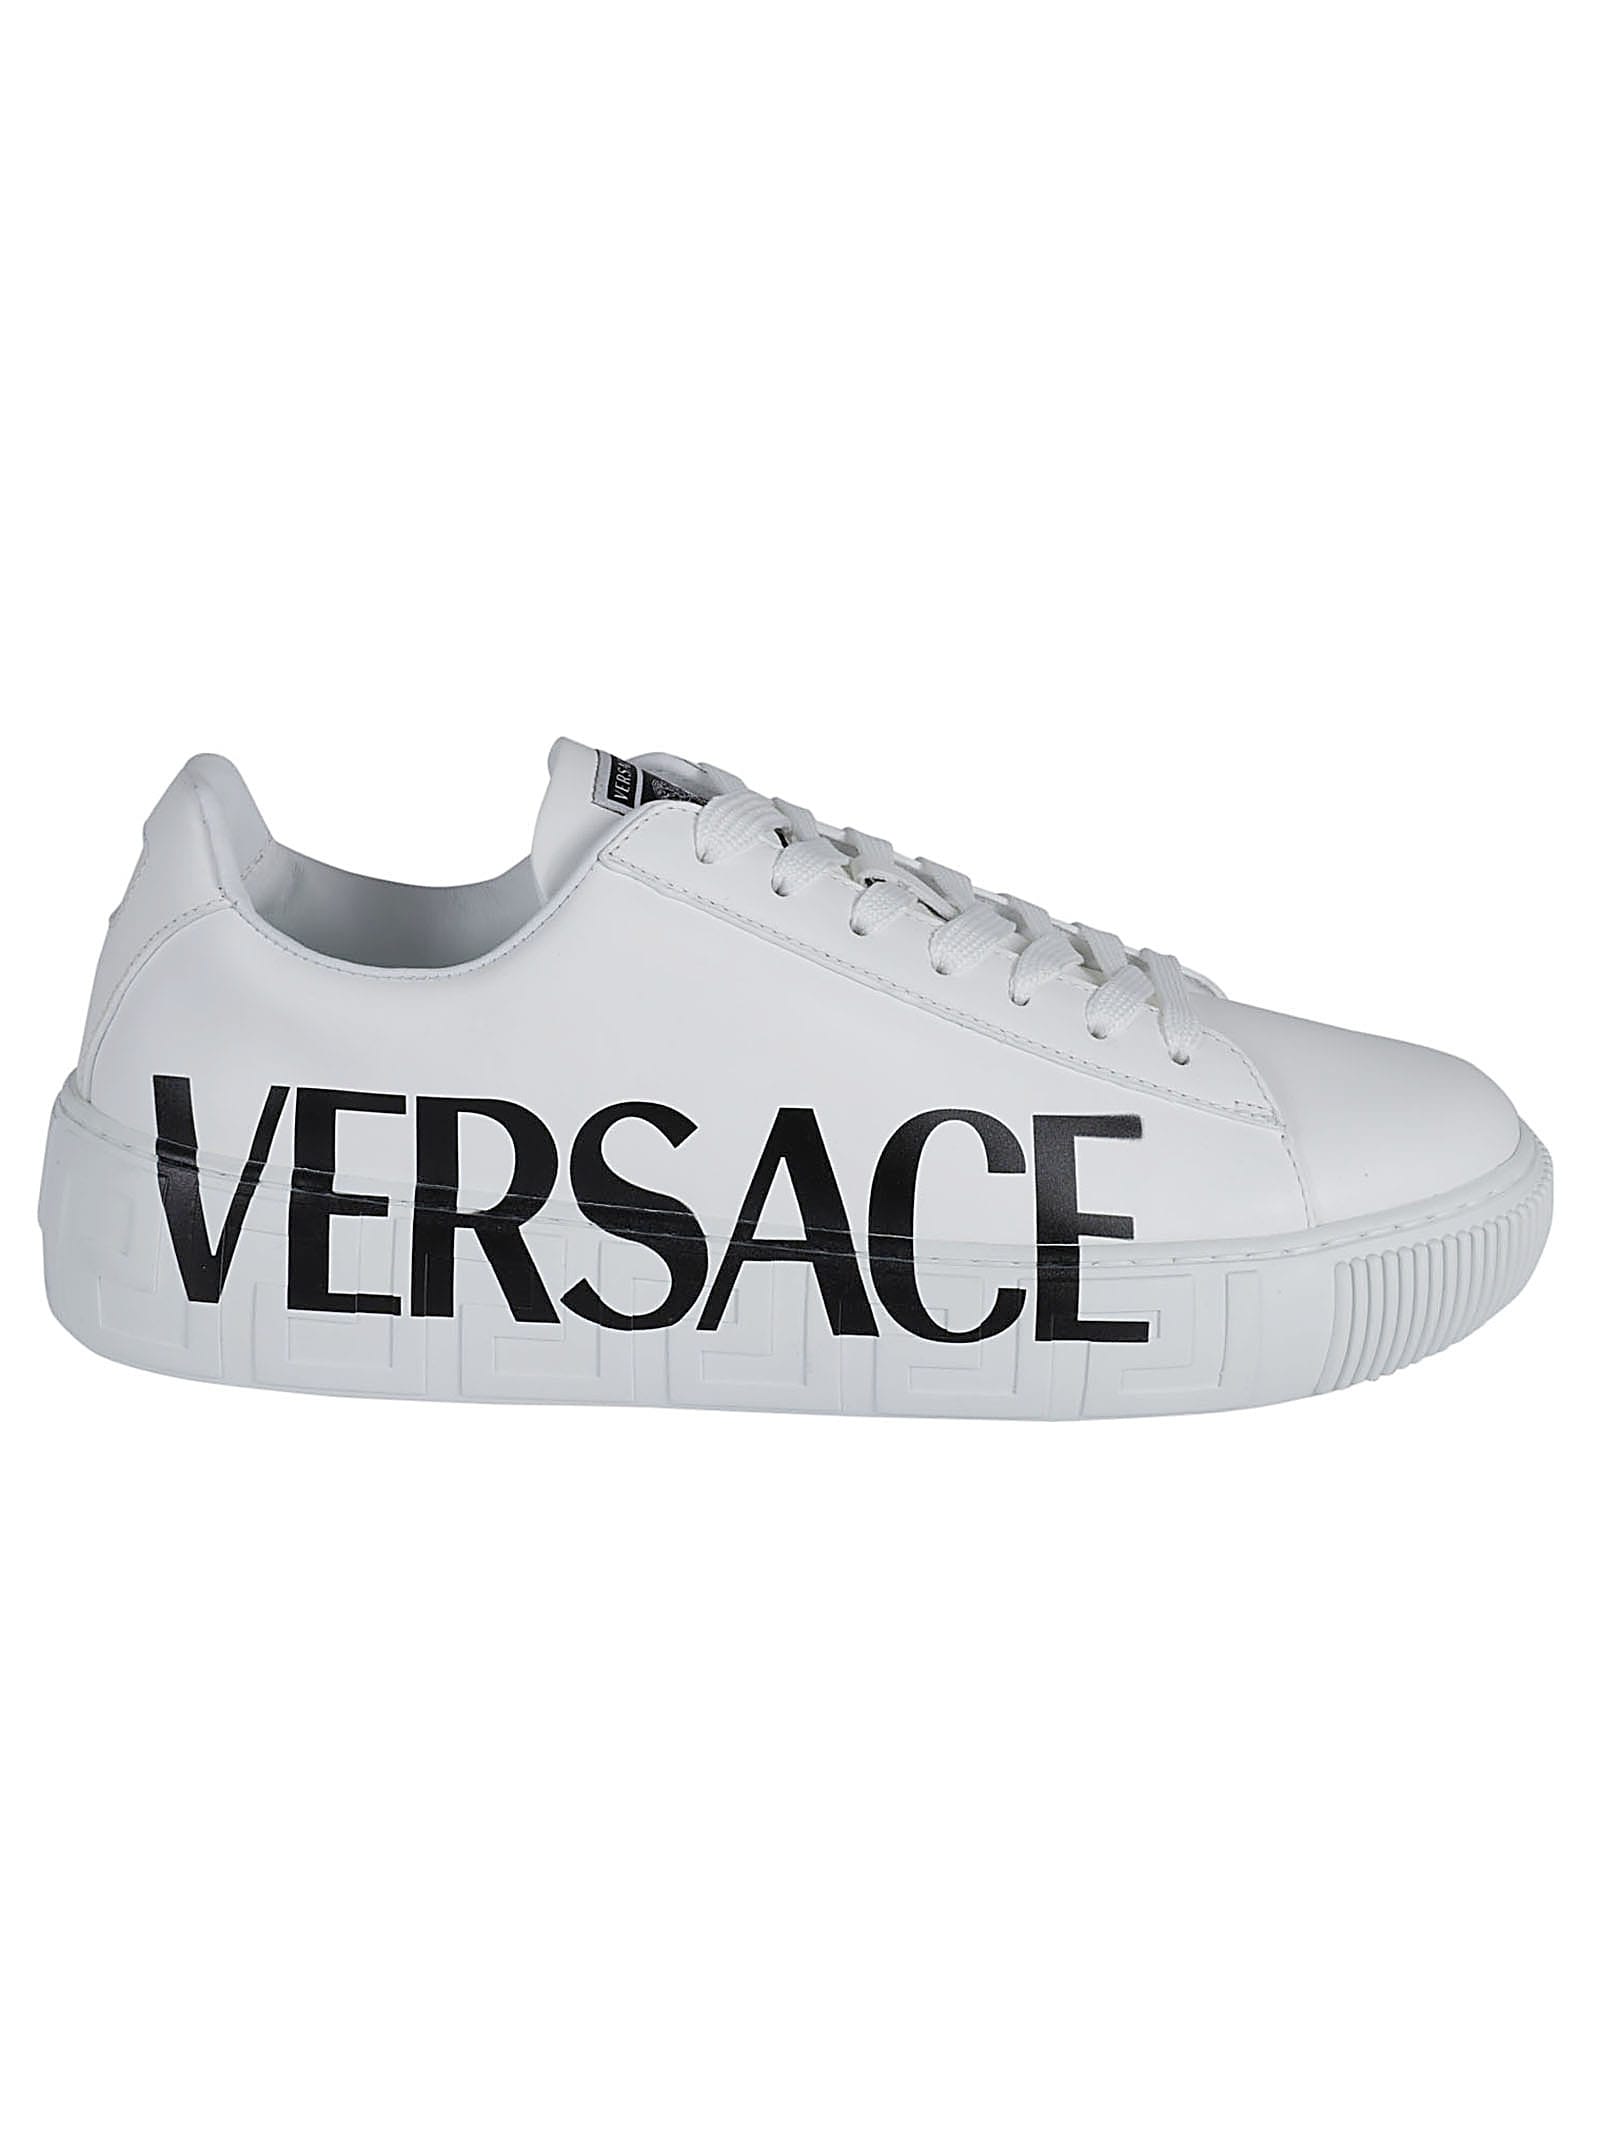 Versace Side Logo Print Sneakers